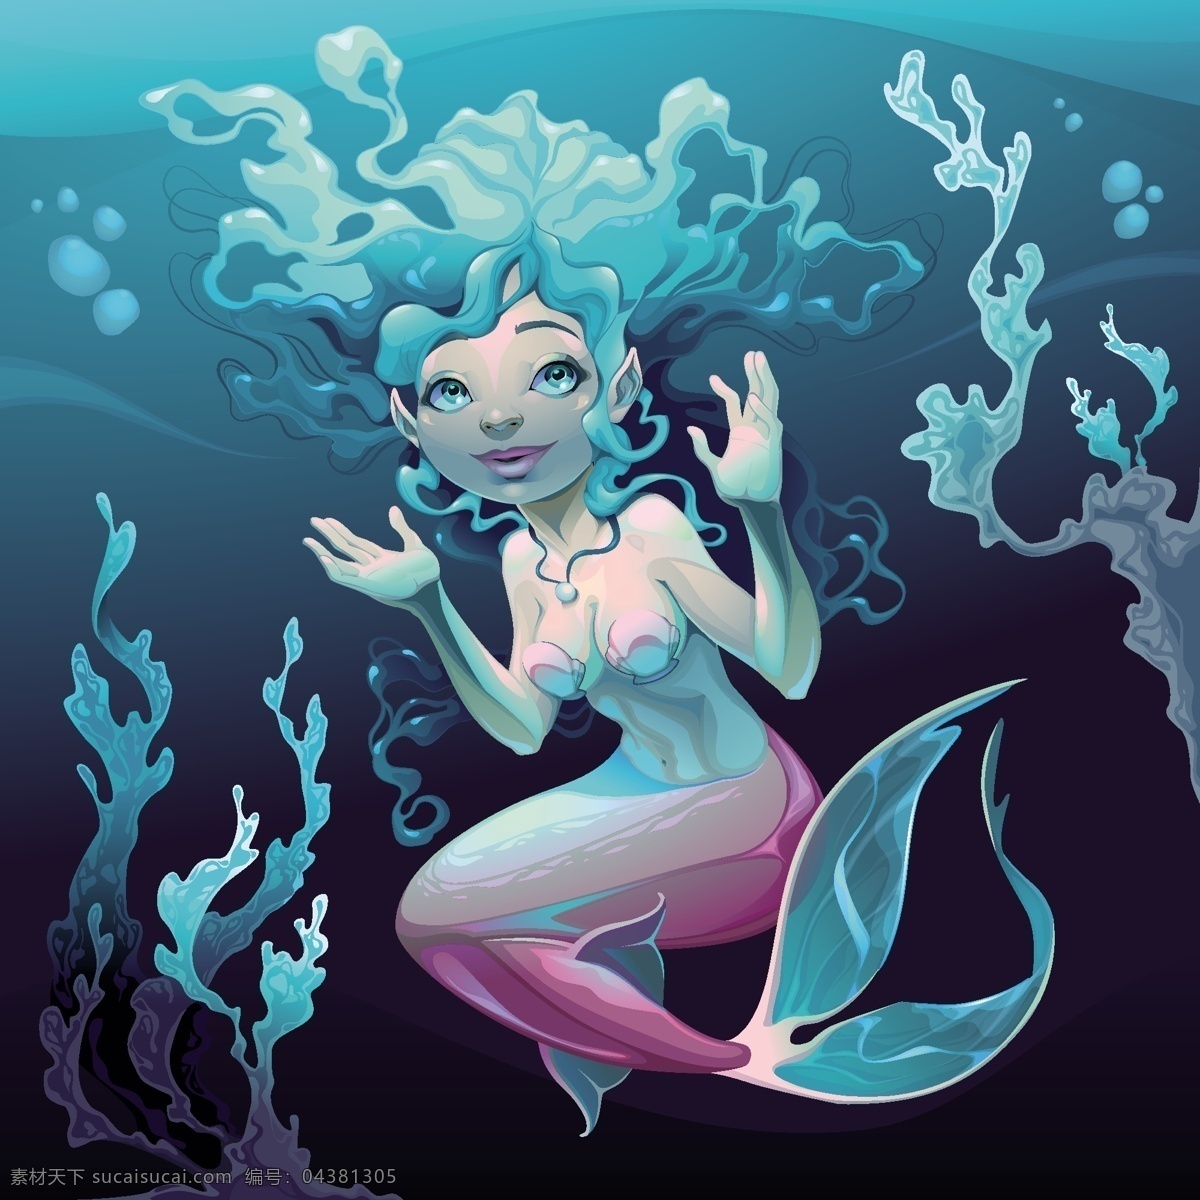 年轻的美人鱼 水 人物 卡通 海洋 绘画 幻想 美人鱼 海藻 警报器 神话